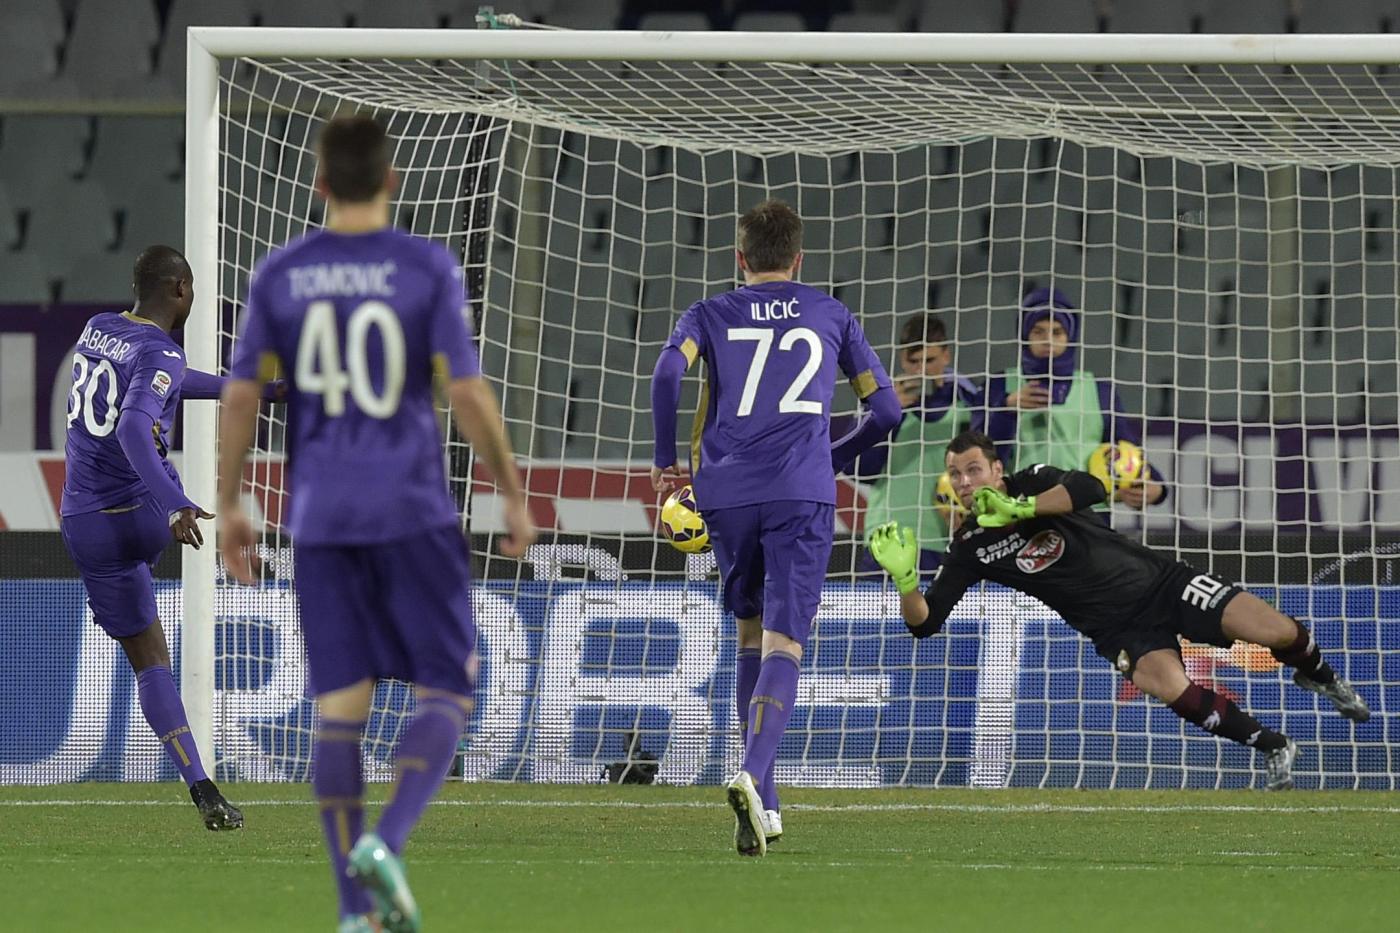 Fiorentina-Torino 1-1 tutto in cinque minuti: Vives risponde a Salah